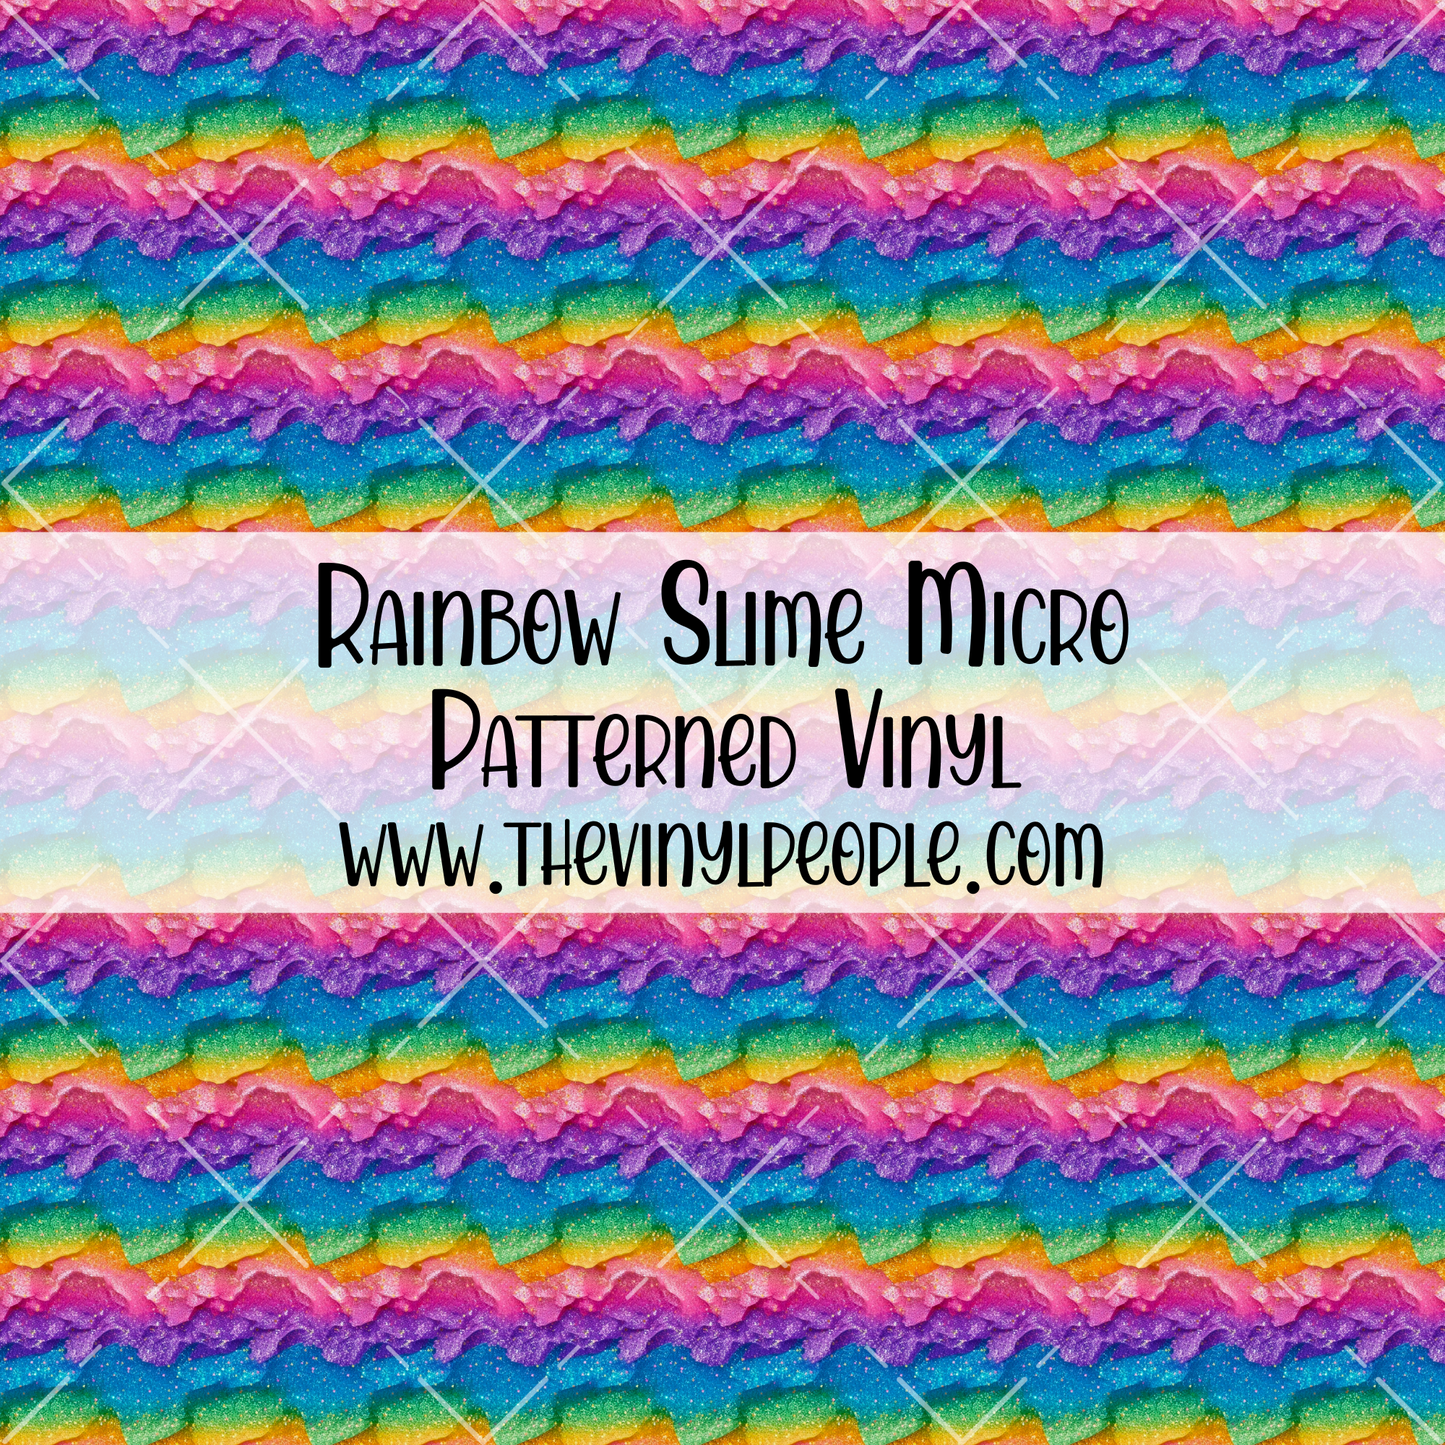 Rainbow Slime Patterned Vinyl